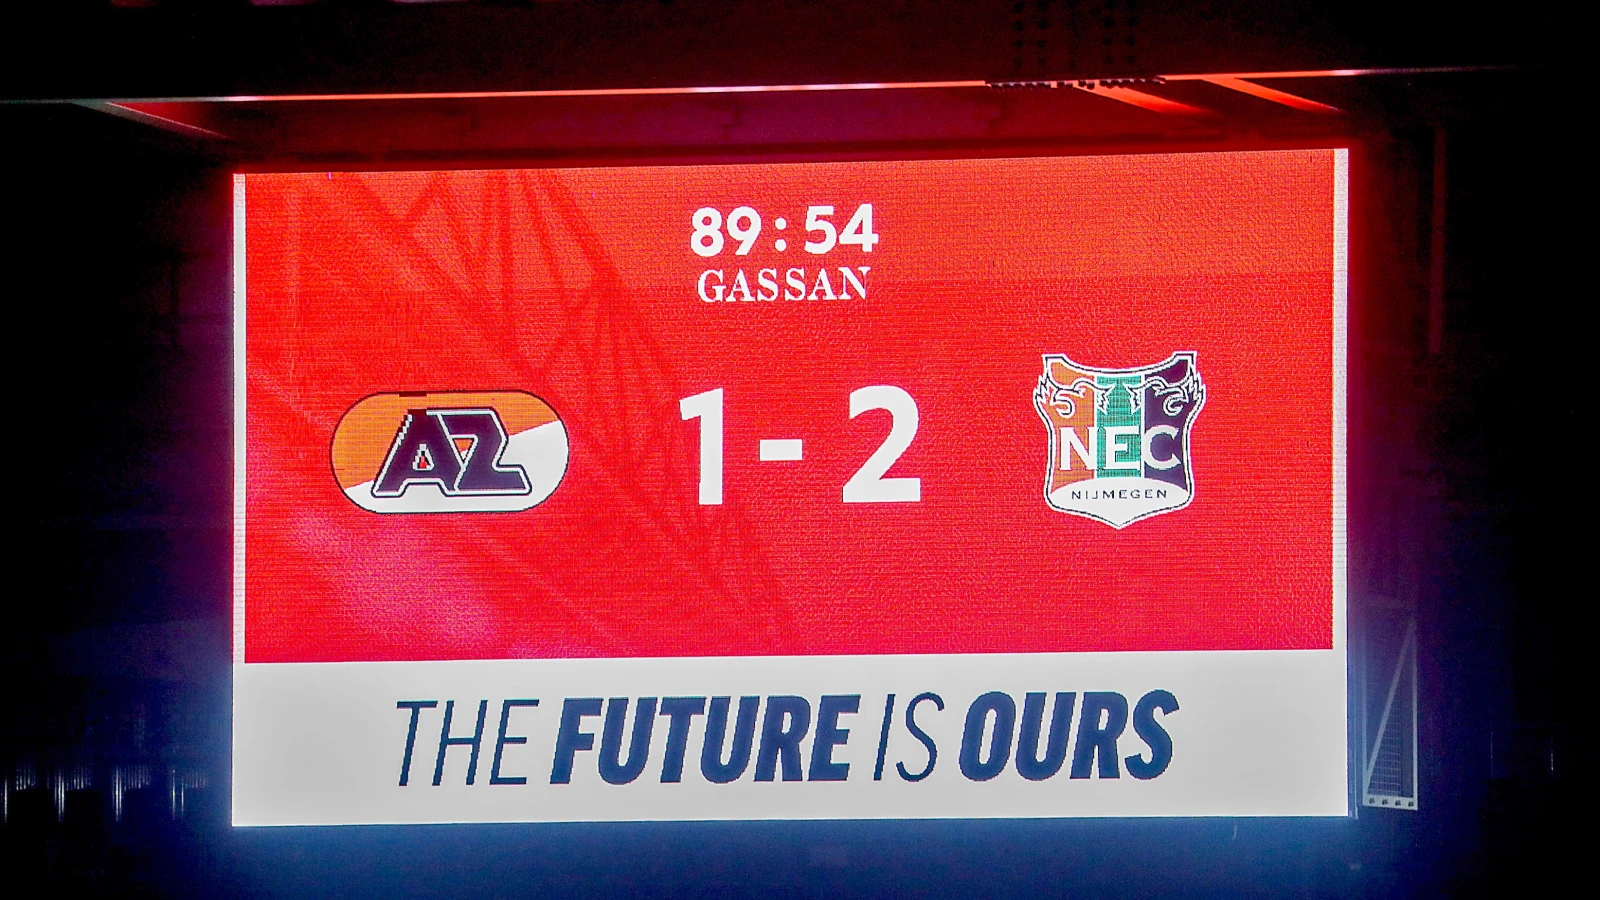 EREDIVISIE | AZ verliest na restant van 5 minuten van NEC, Ajax wint restant van RKC